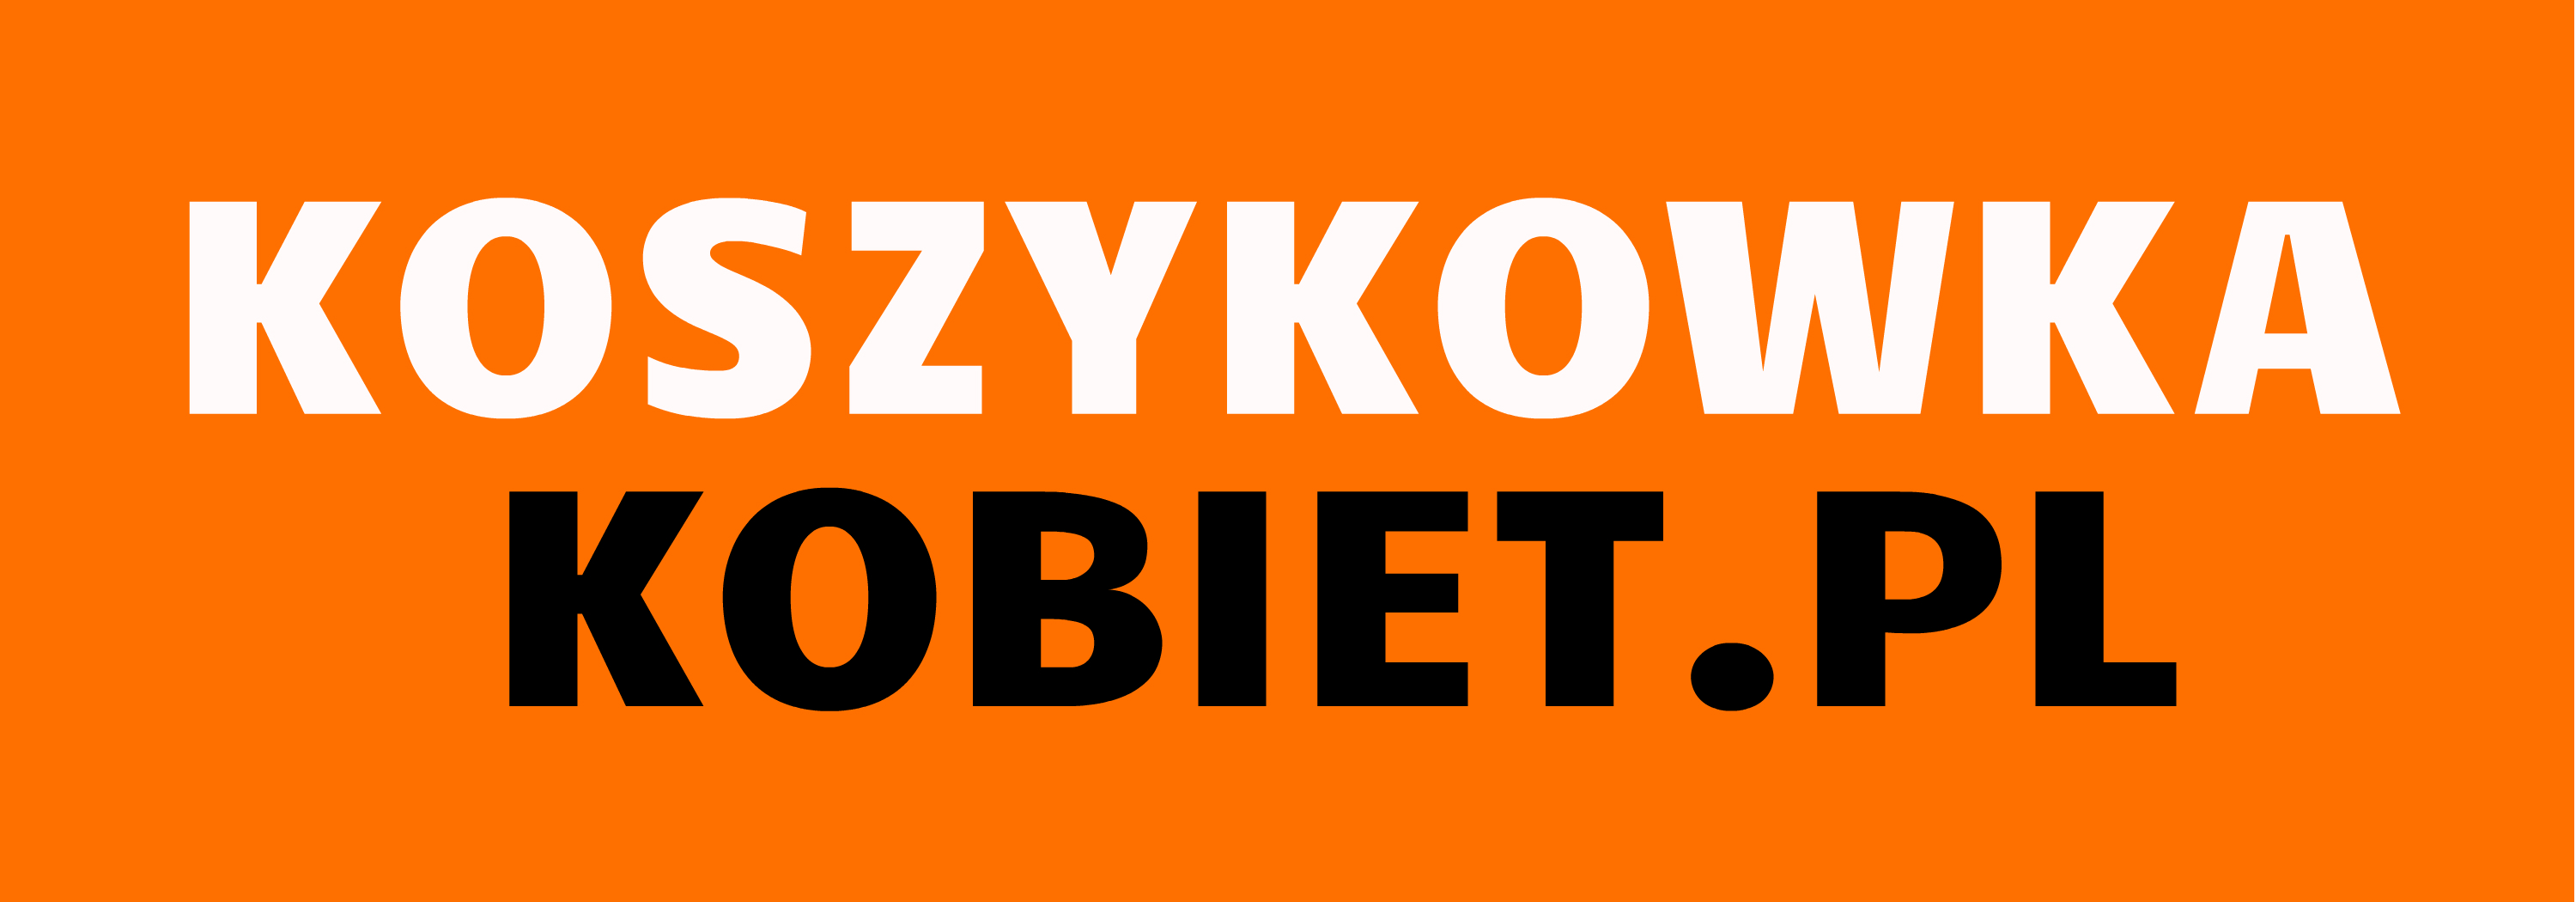 Portal koszykowkakobiet.pl naszym partnerem medialnym